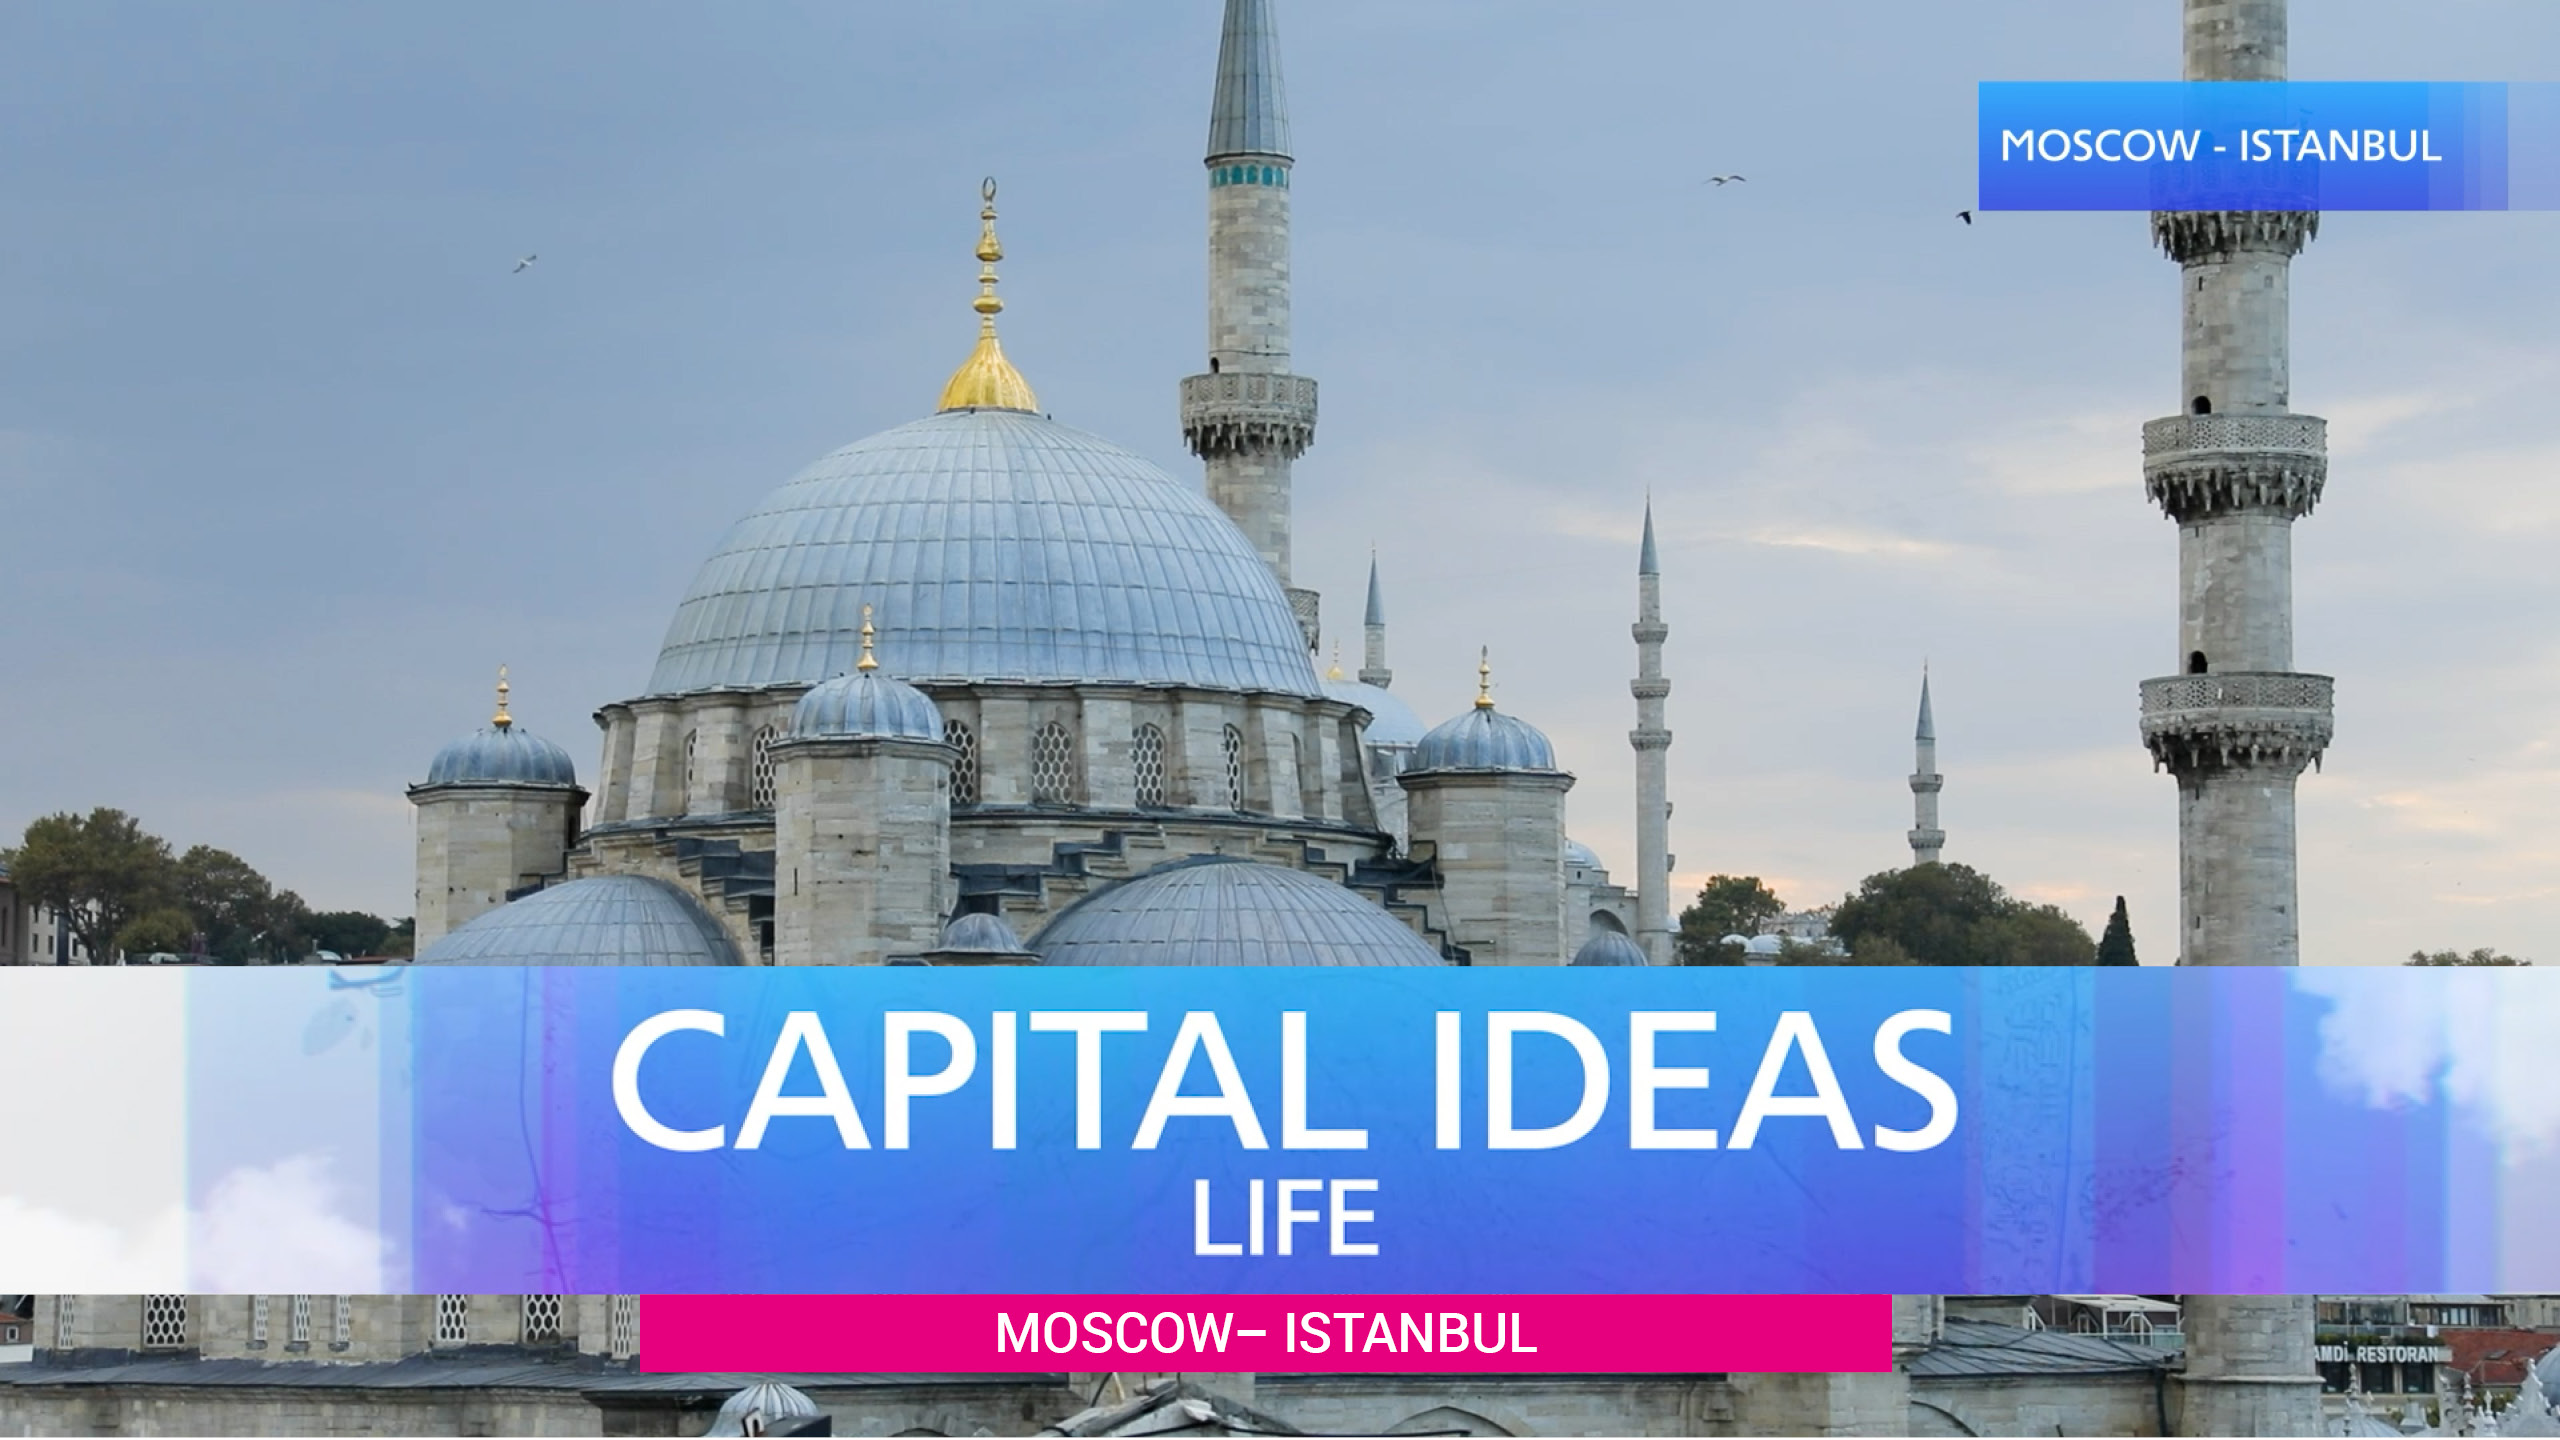 Capital ideas Life - Moscow - Istanbul